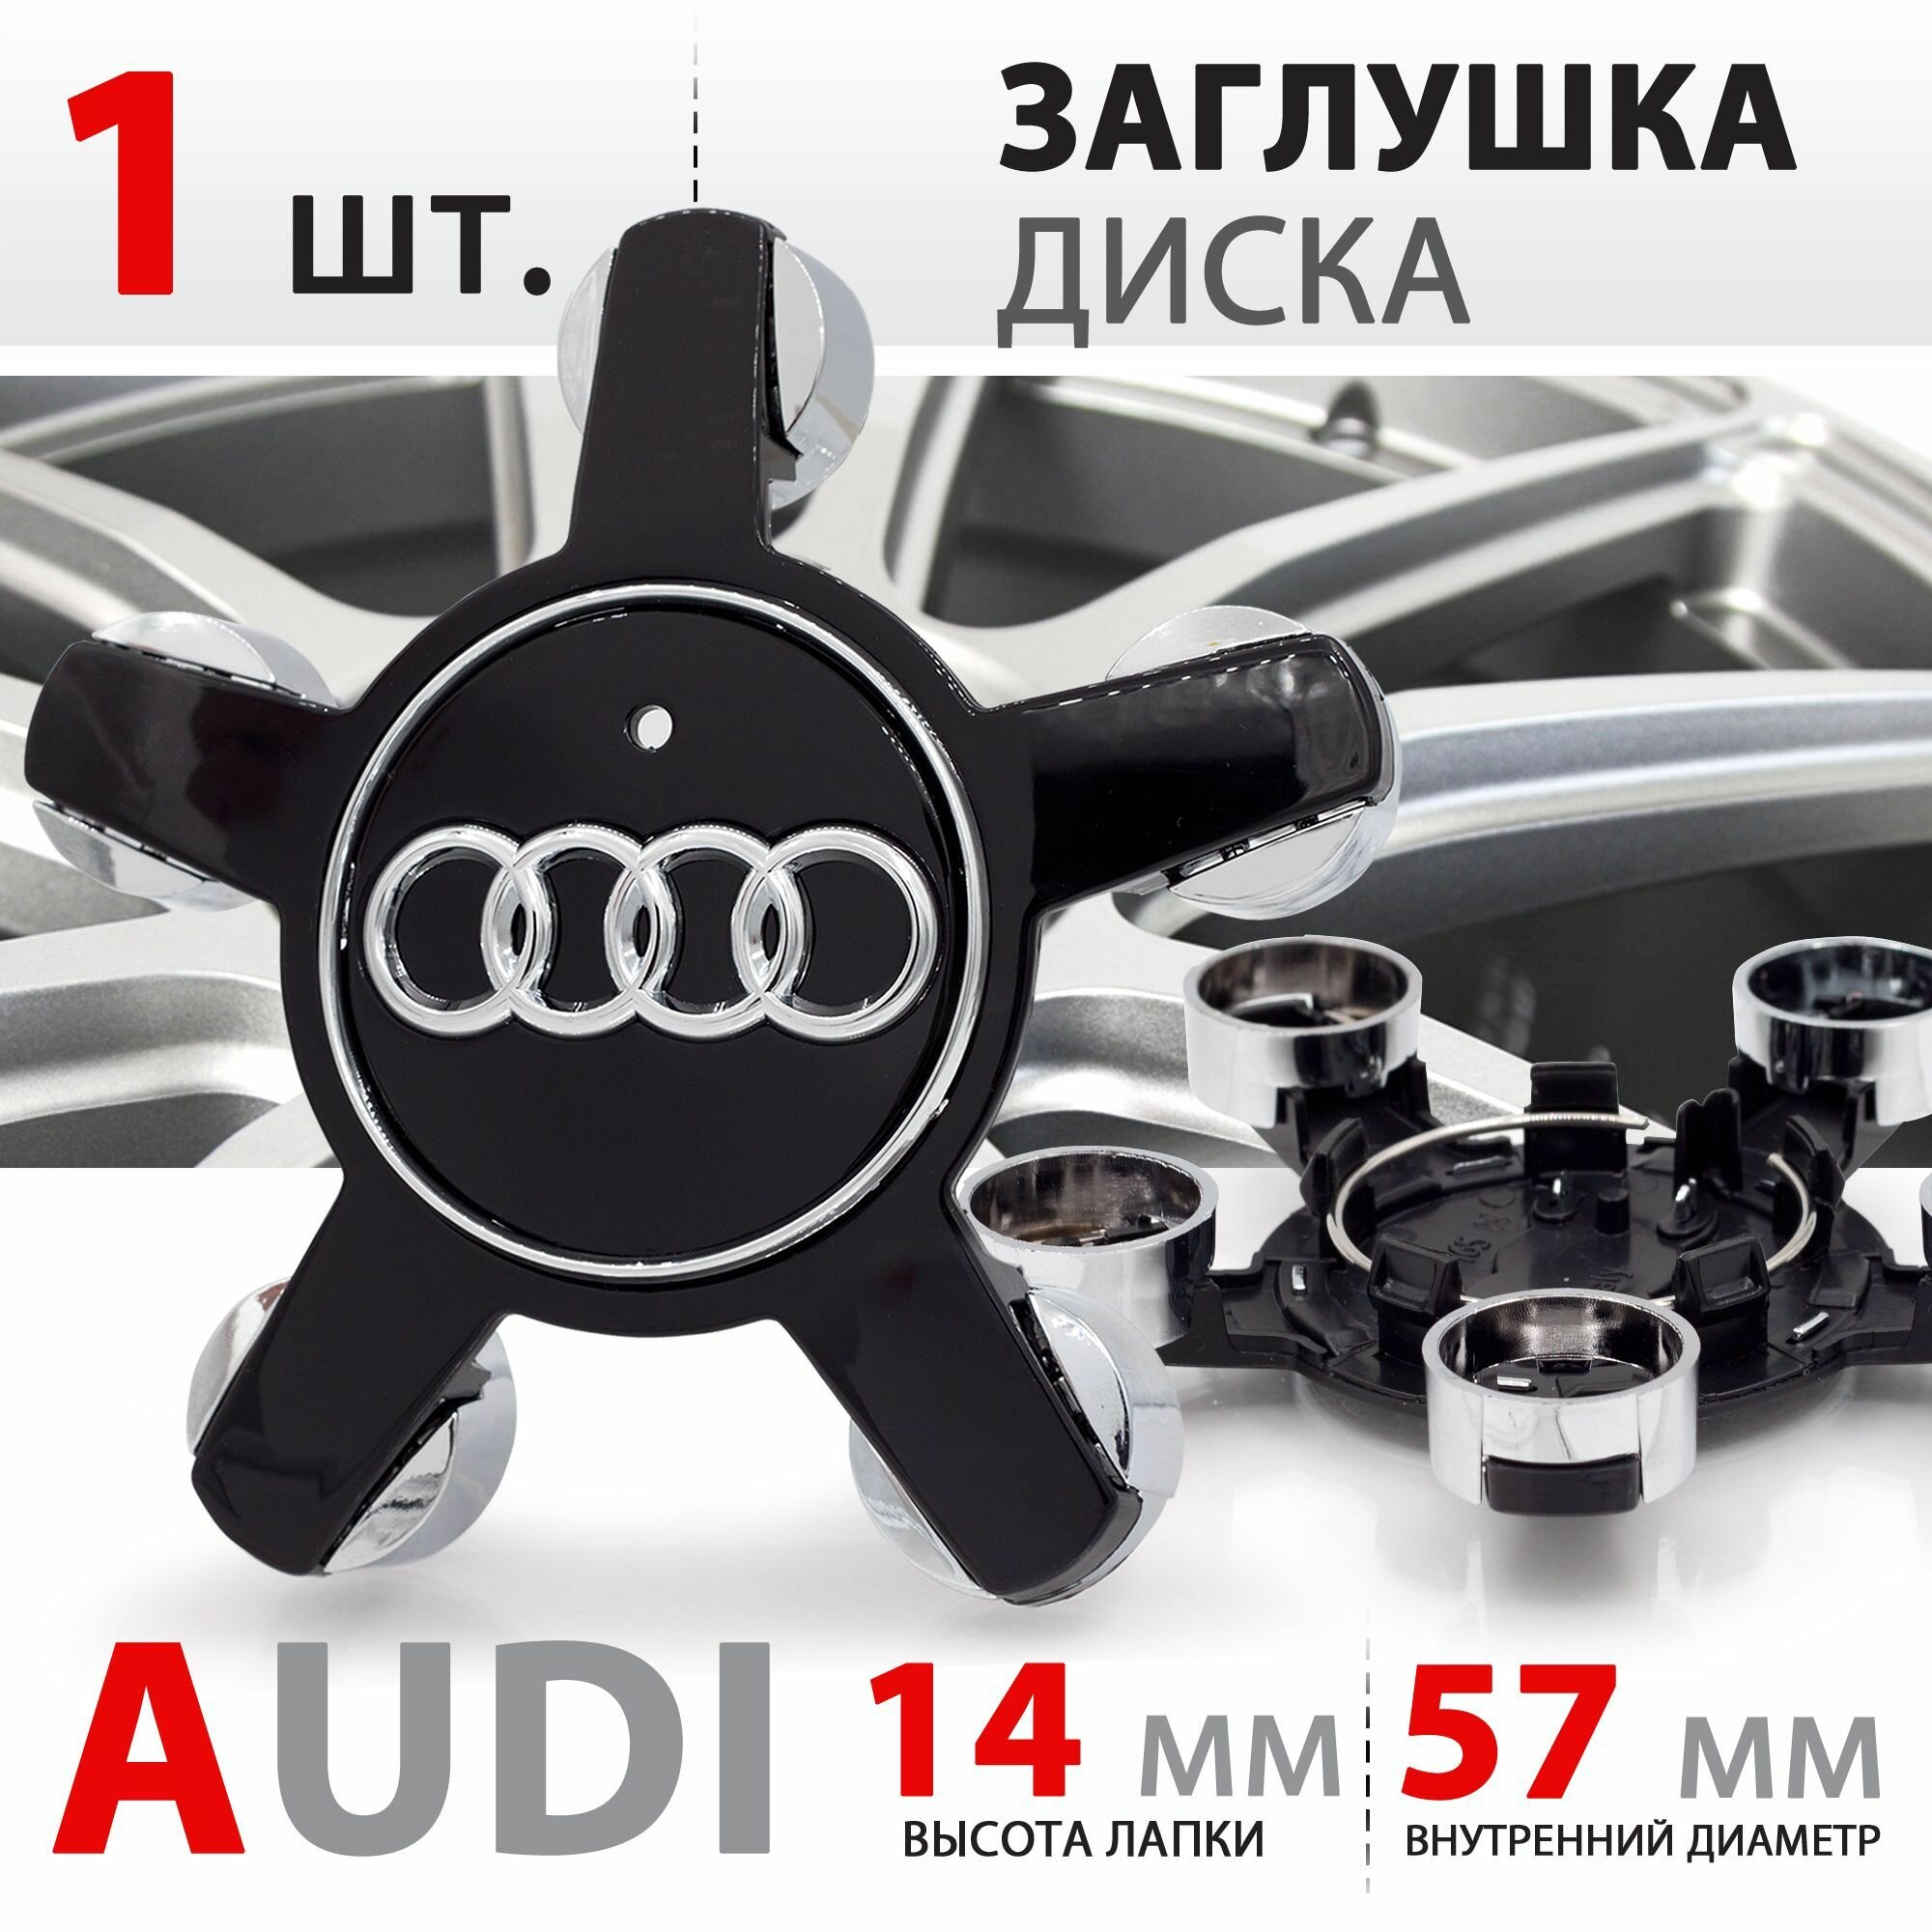 Колпачок, заглушка на литой диск колеса для Audi "Звезда" / Ауди 5х112 R16, R17, R18 / 4F0601165N - 1 штука, черный